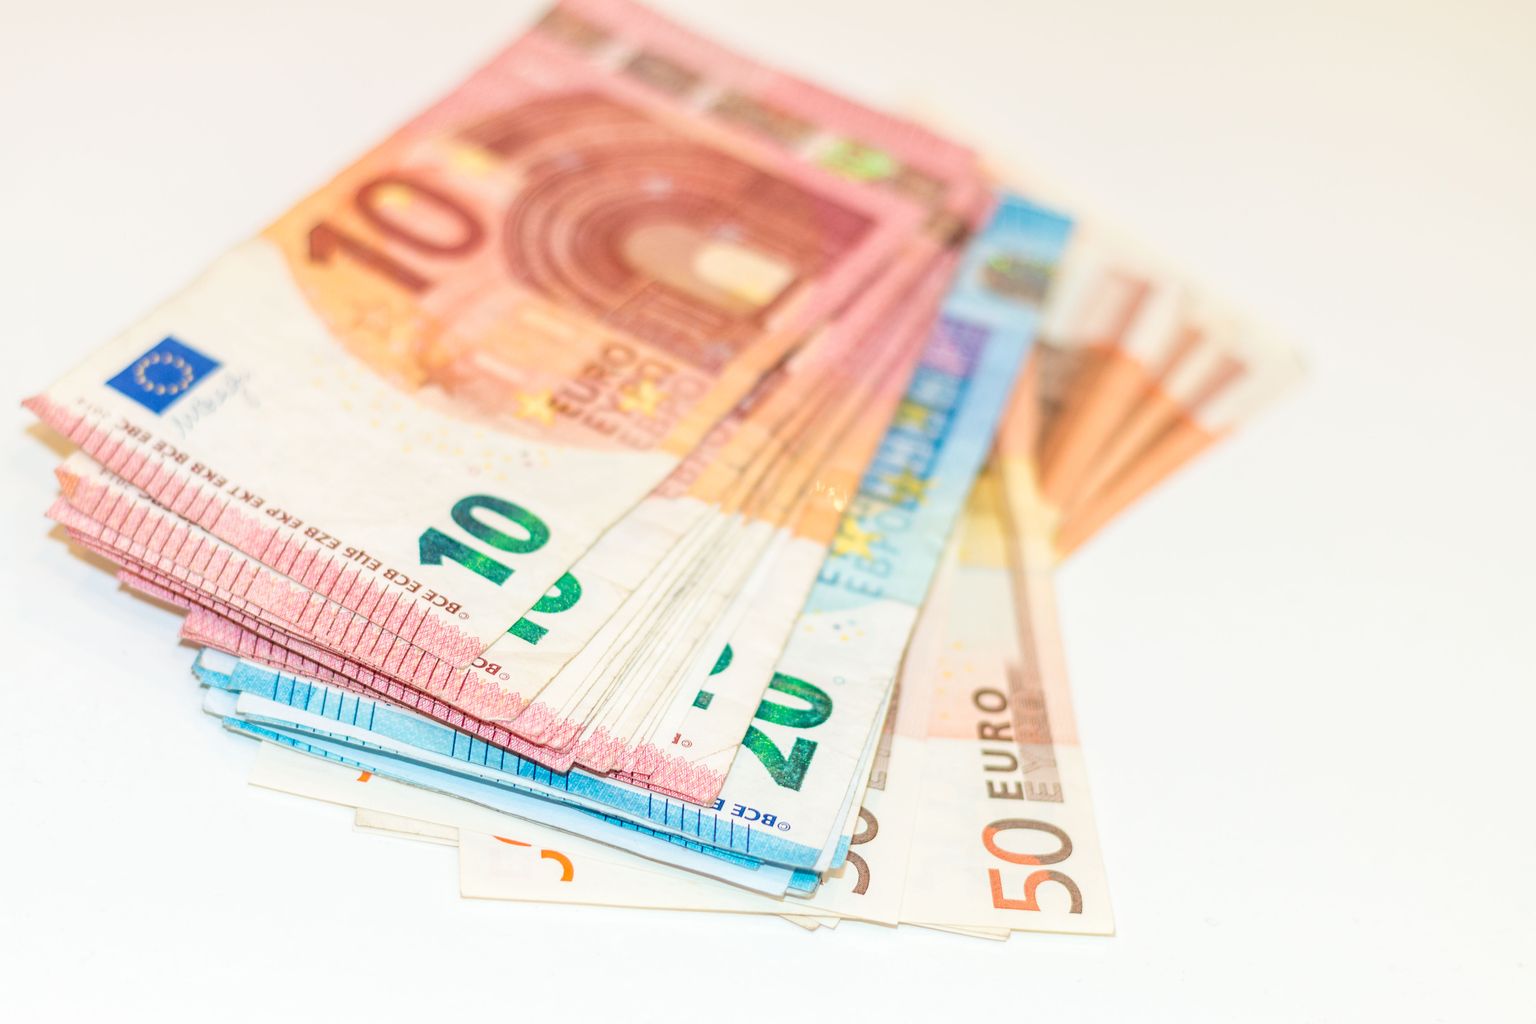 Kelmidel õnnestus välja petta enam kui 10 000 eurot.